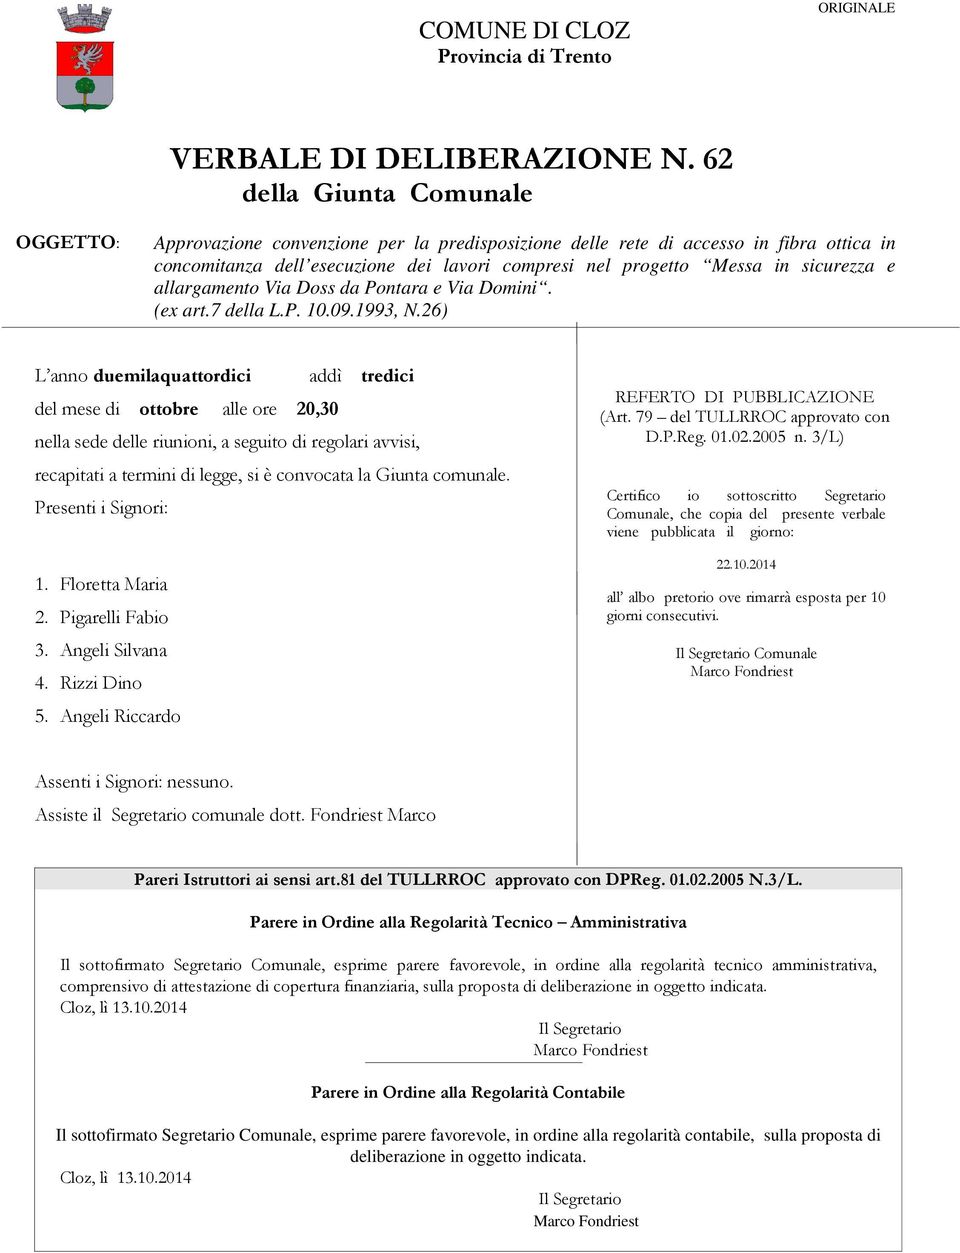 sicurezza e allargamento Via Doss da Pontara e Via Domini. (ex art.7 della L.P. 10.09.1993, N.